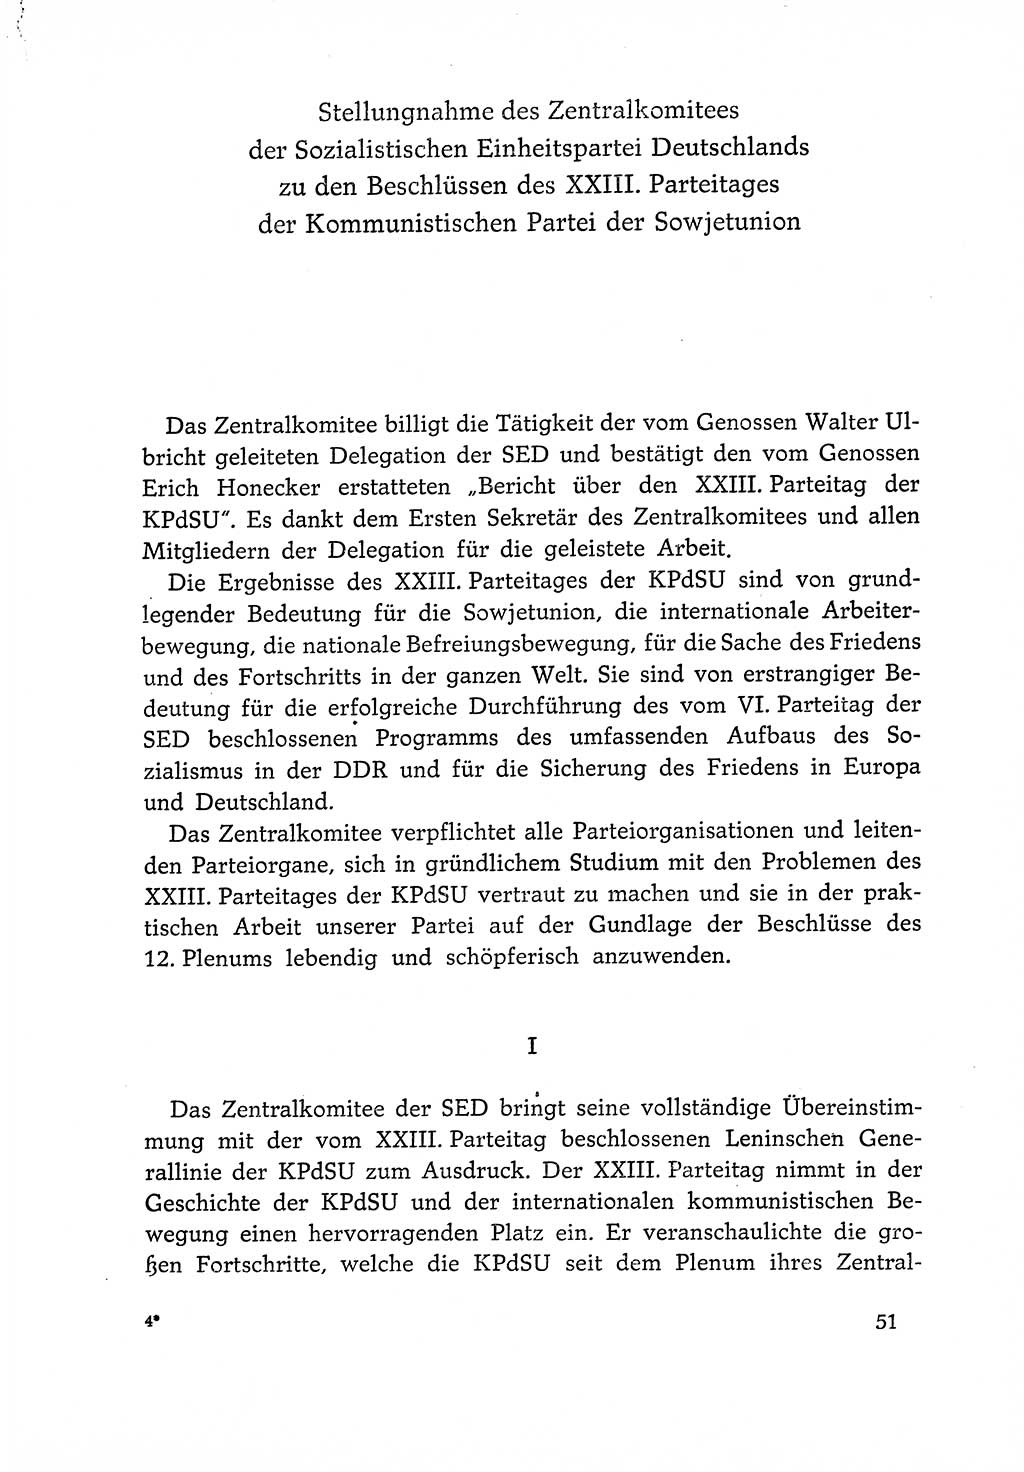 Dokumente der Sozialistischen Einheitspartei Deutschlands (SED) [Deutsche Demokratische Republik (DDR)] 1966-1967, Seite 51 (Dok. SED DDR 1966-1967, S. 51)